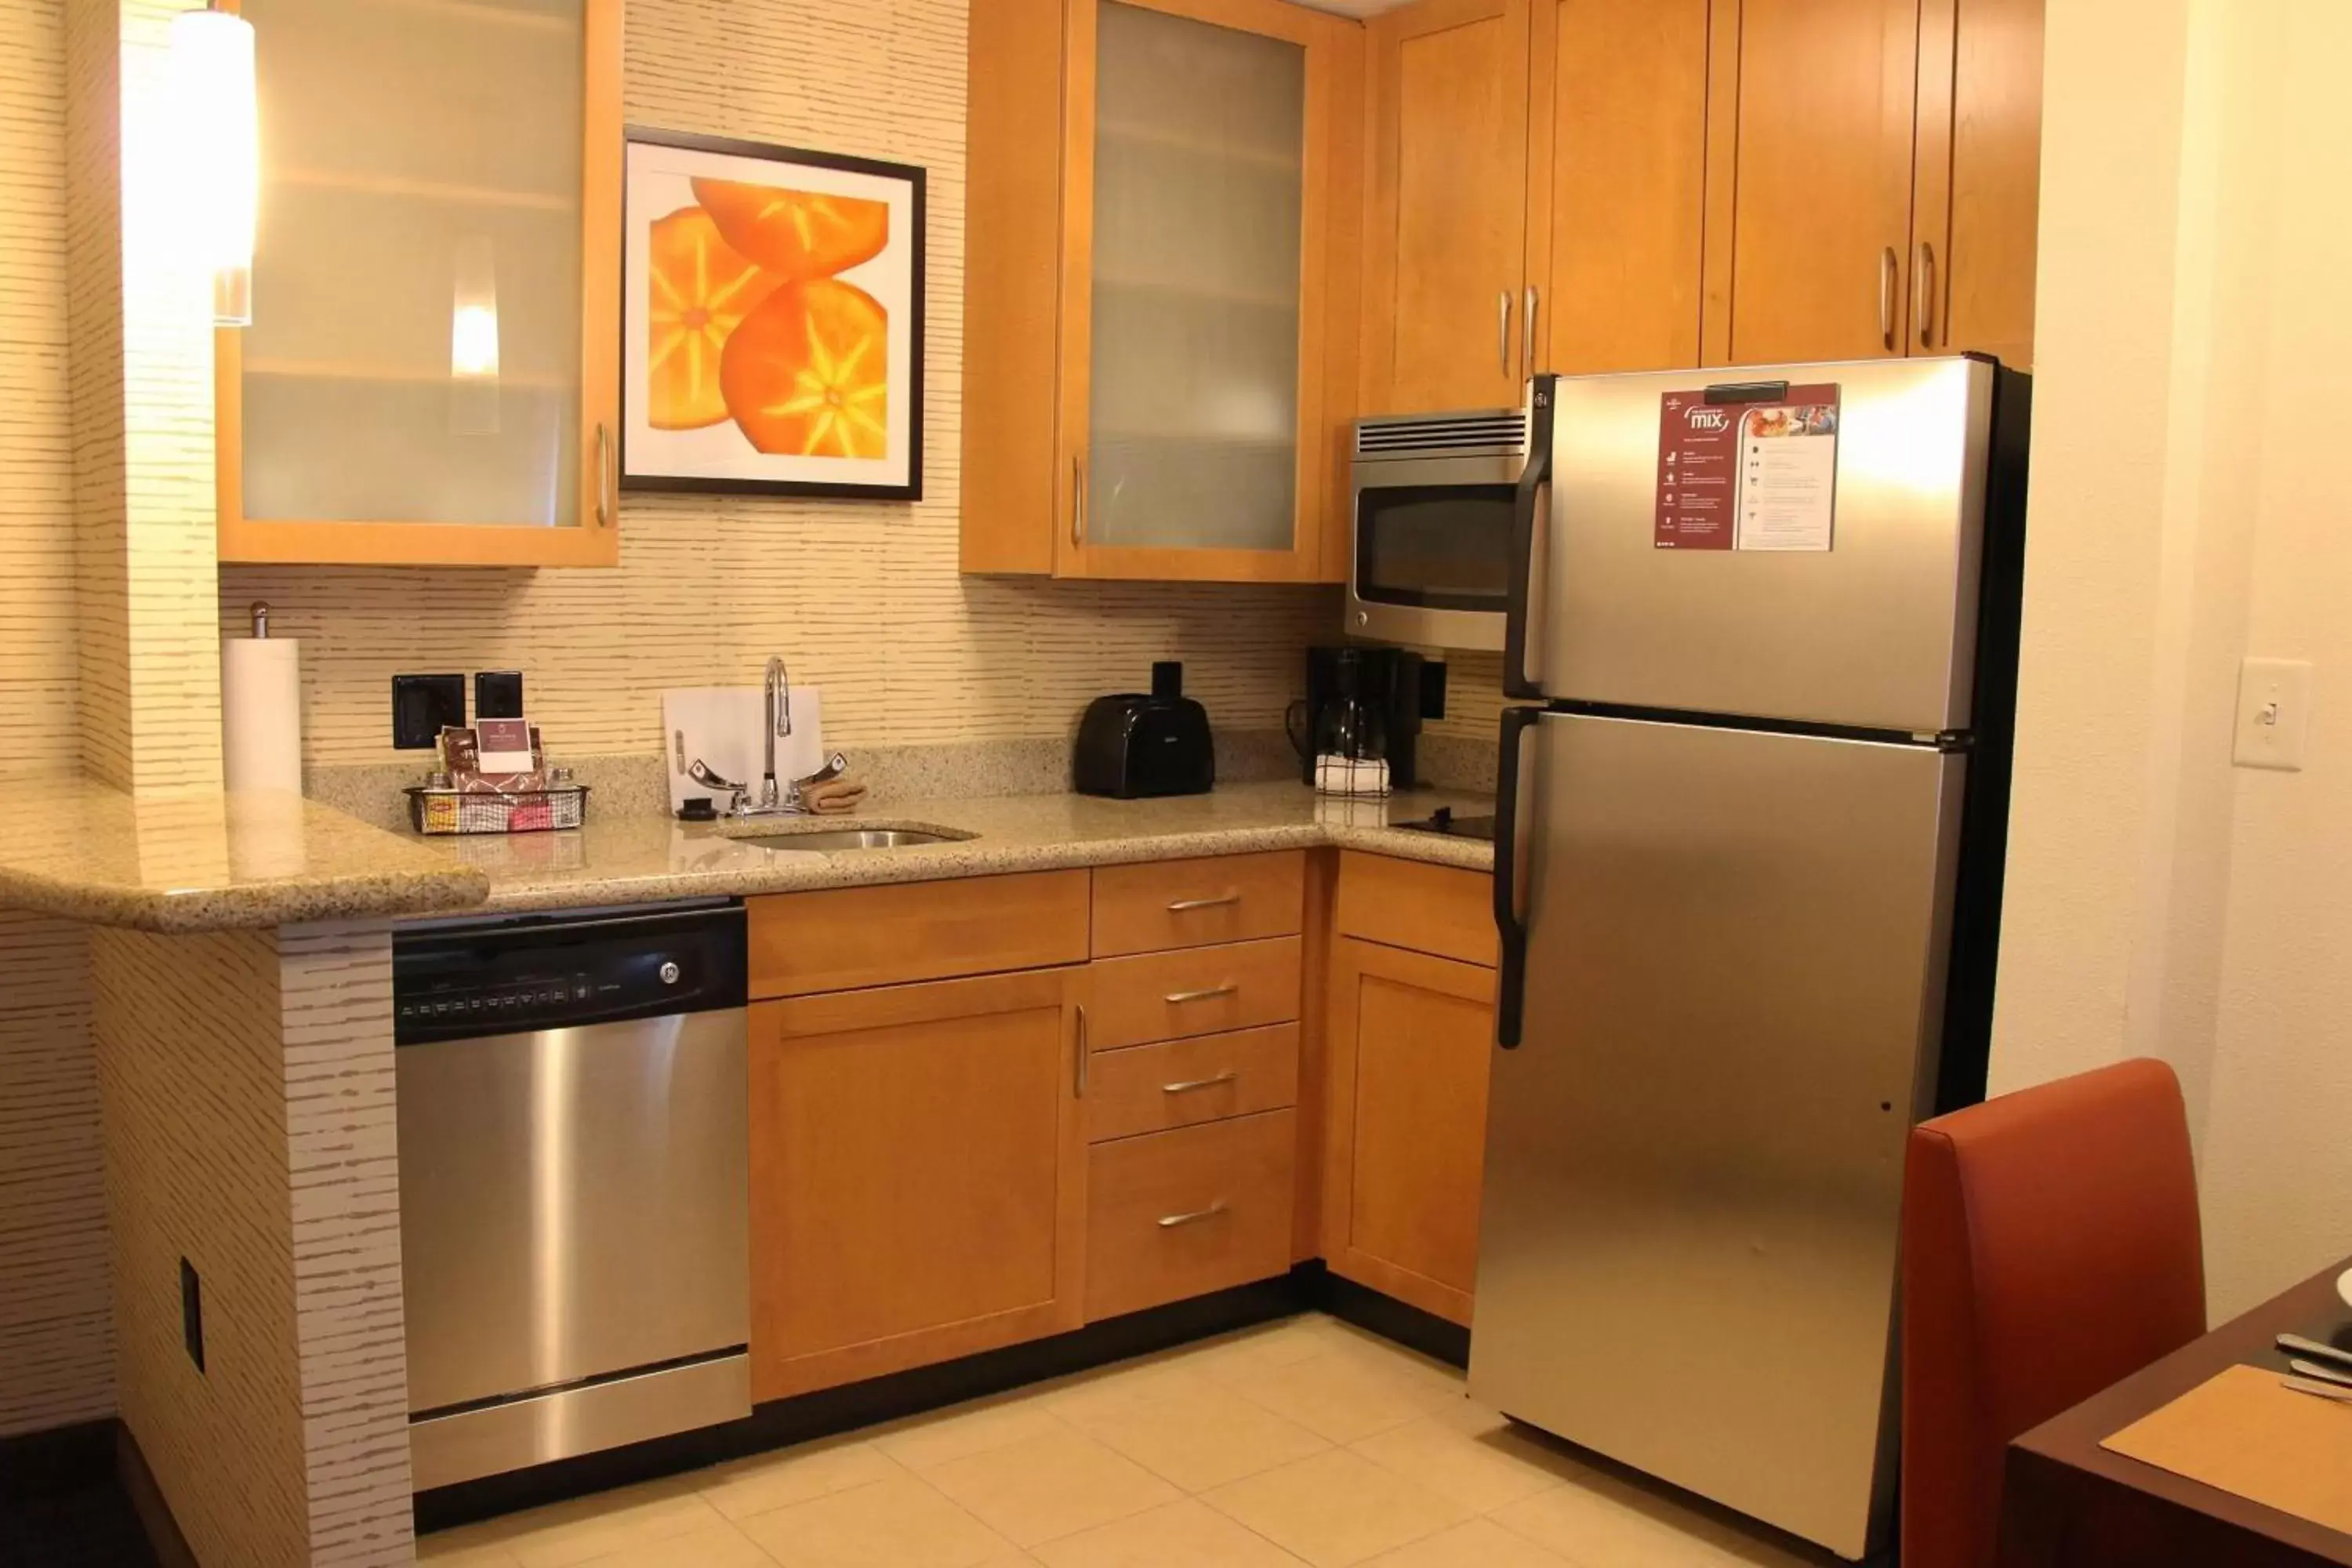 Kitchen or kitchenette, Kitchen/Kitchenette in Residence Inn Newport News Airport